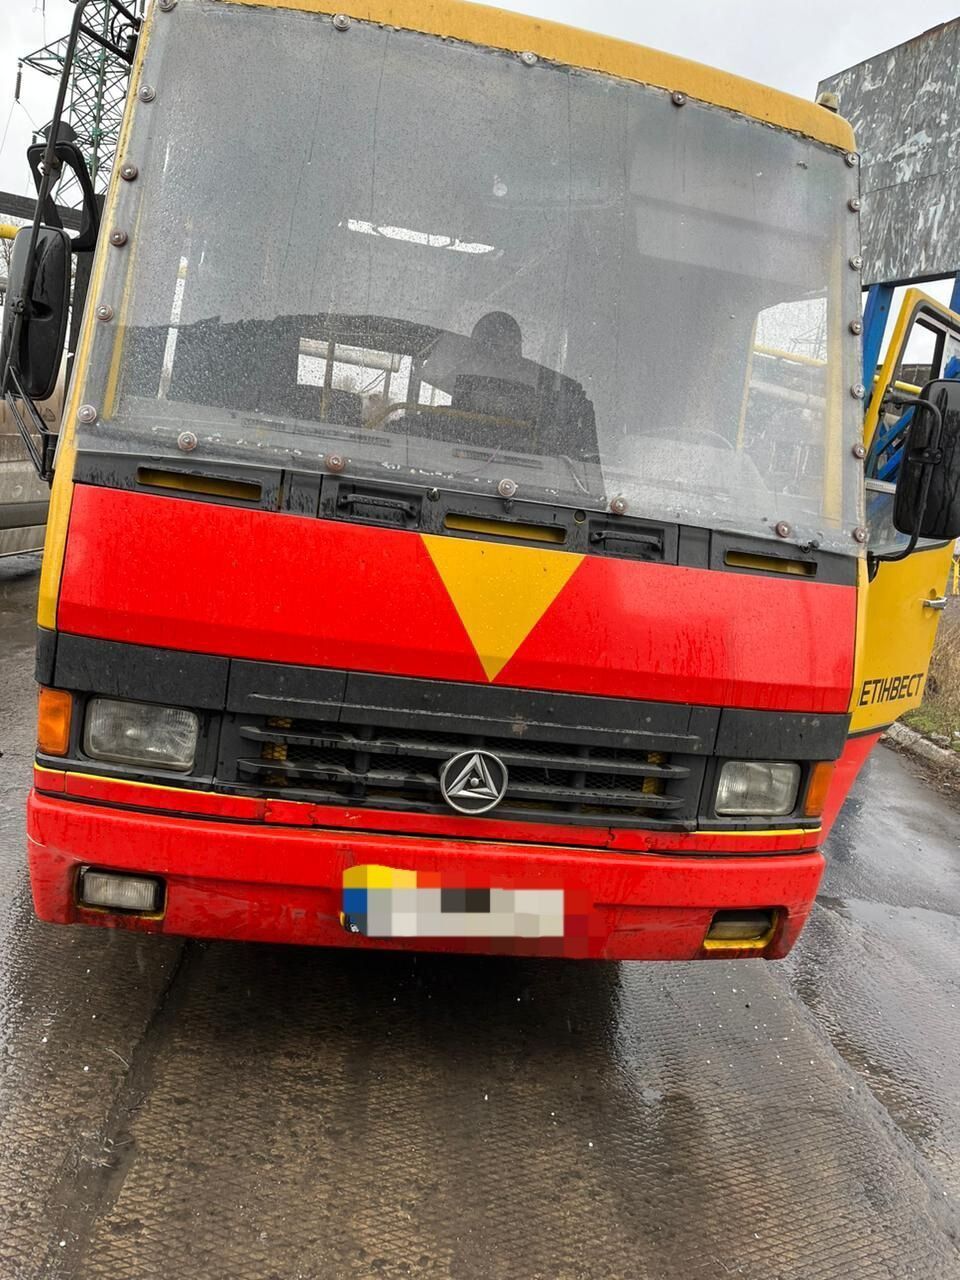 Оккупанты обстреляли автобус в Авдеевке: один человек погиб, еще один ранен. Фото